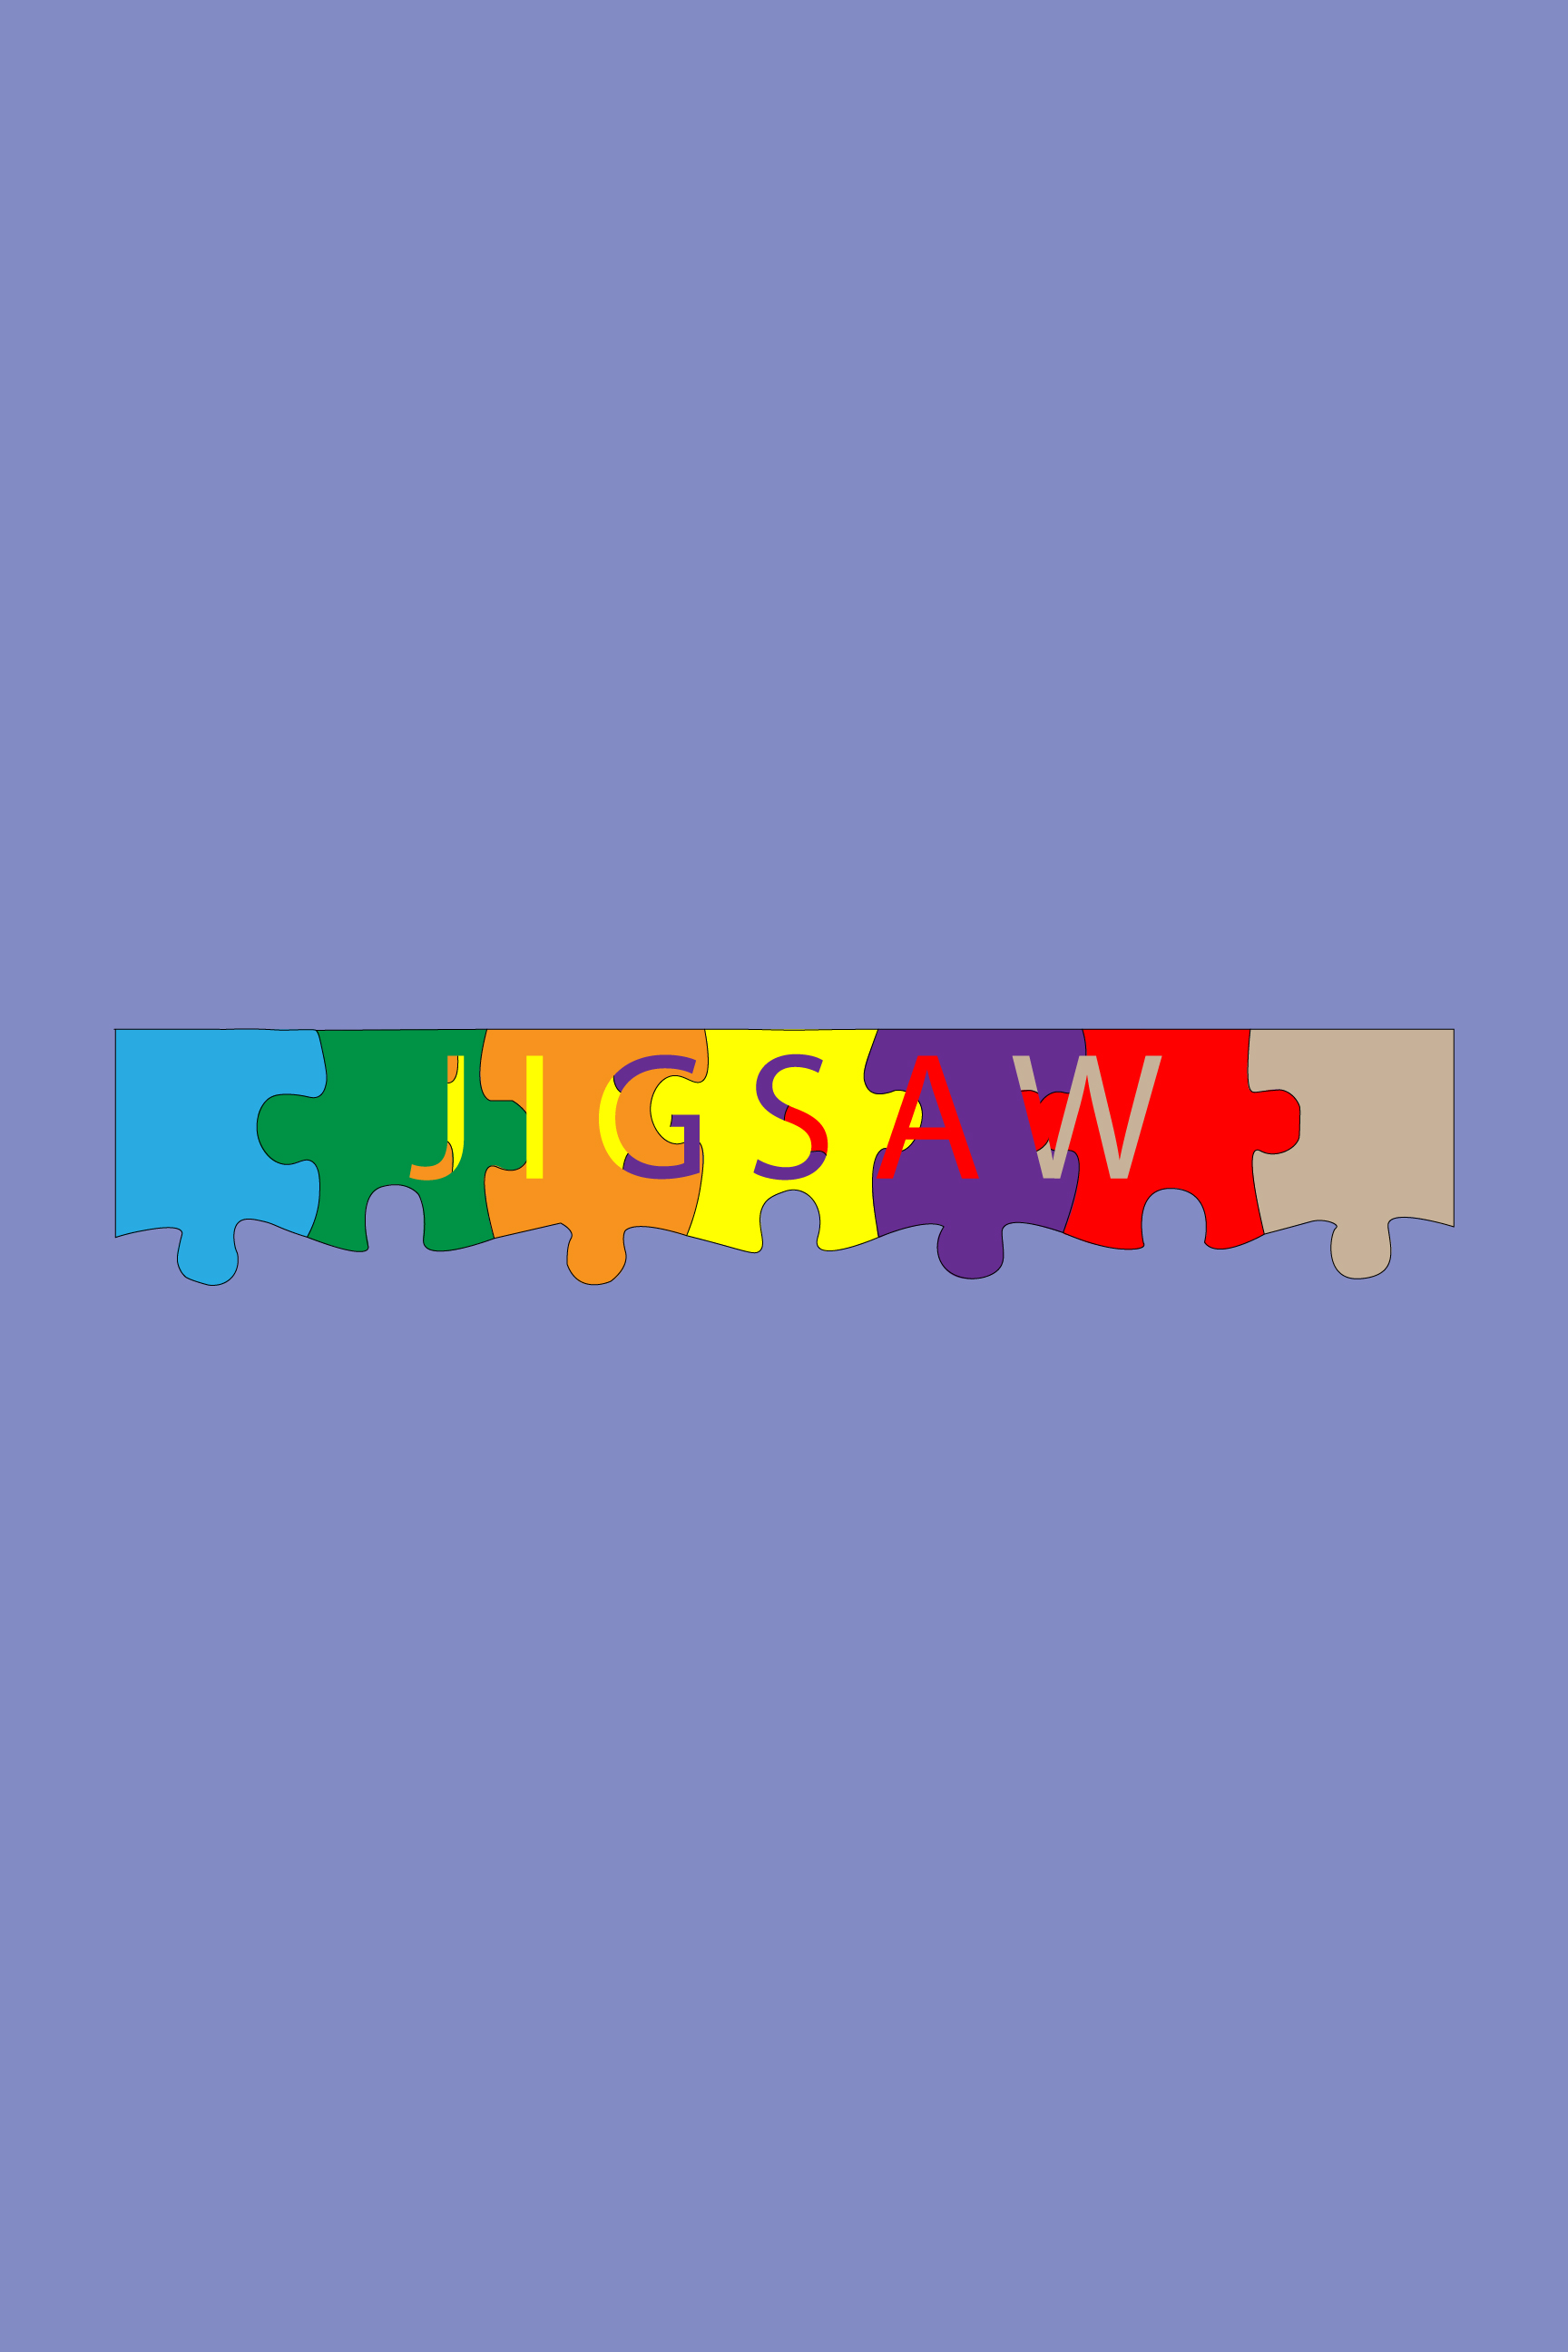 Jigsaw Text Art